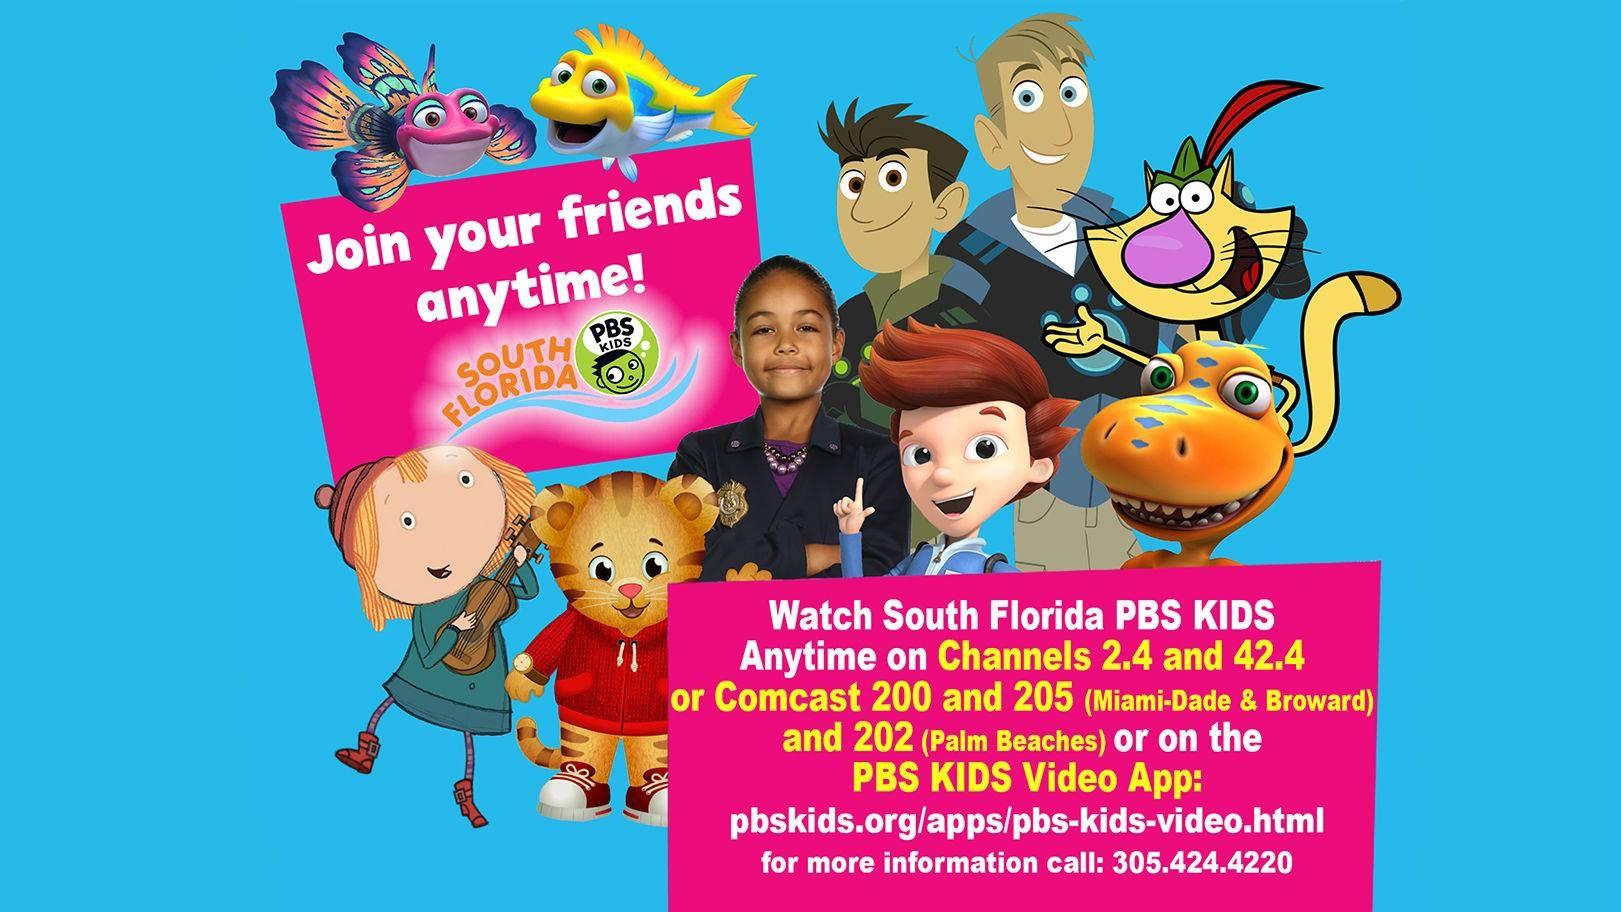 South Florida PBS Kids